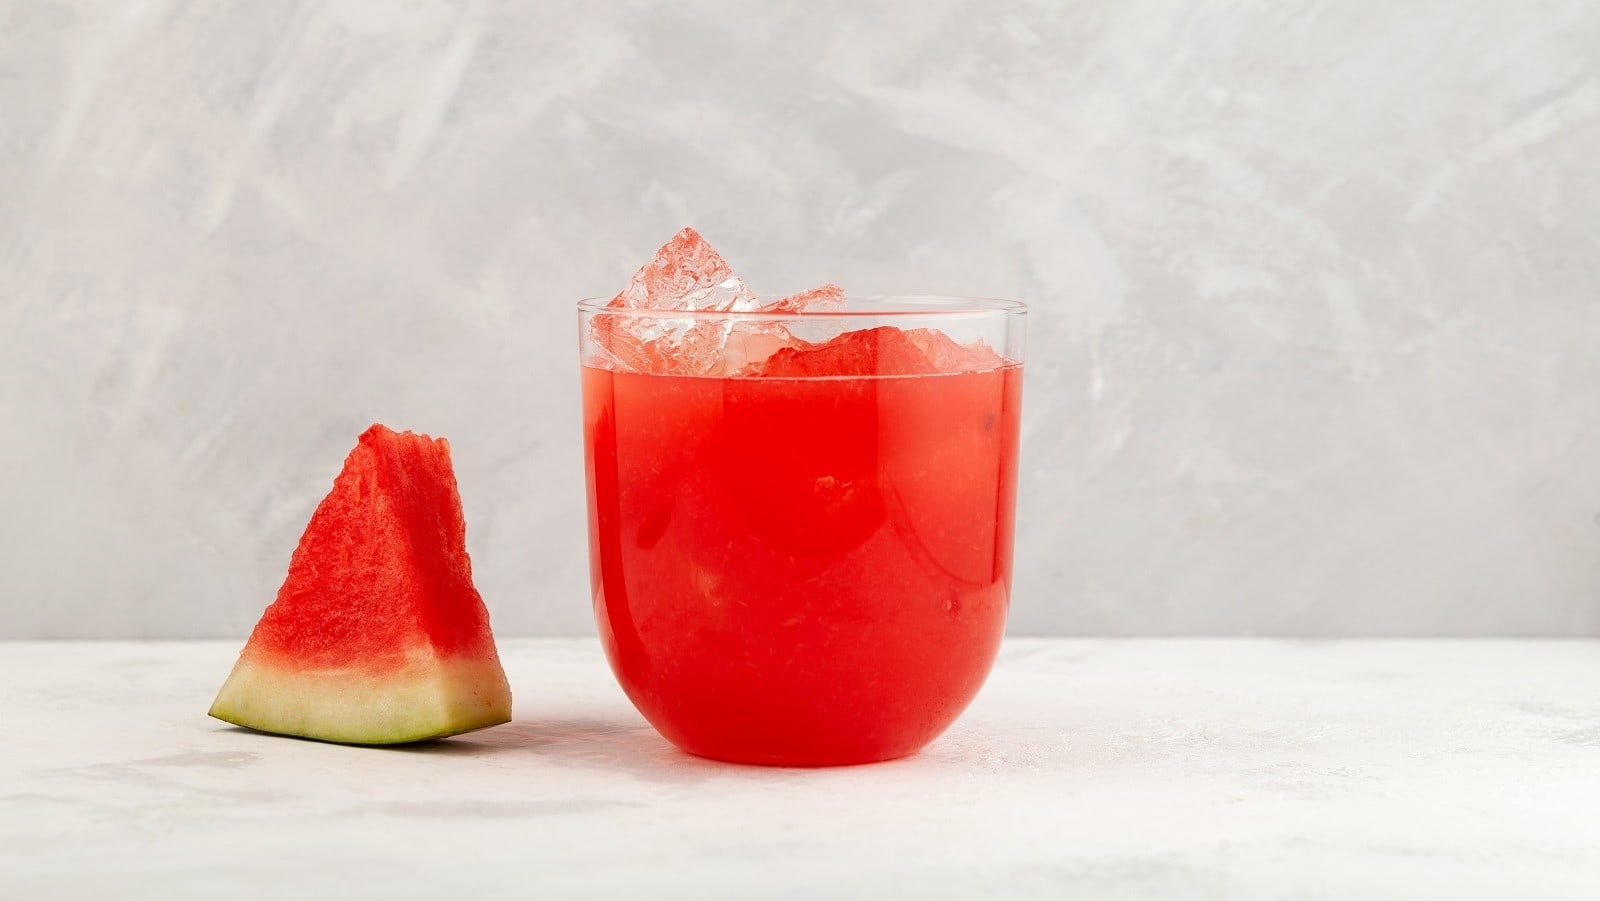 Ein Glas Agua fresca neben einem Stück Wassermelone.